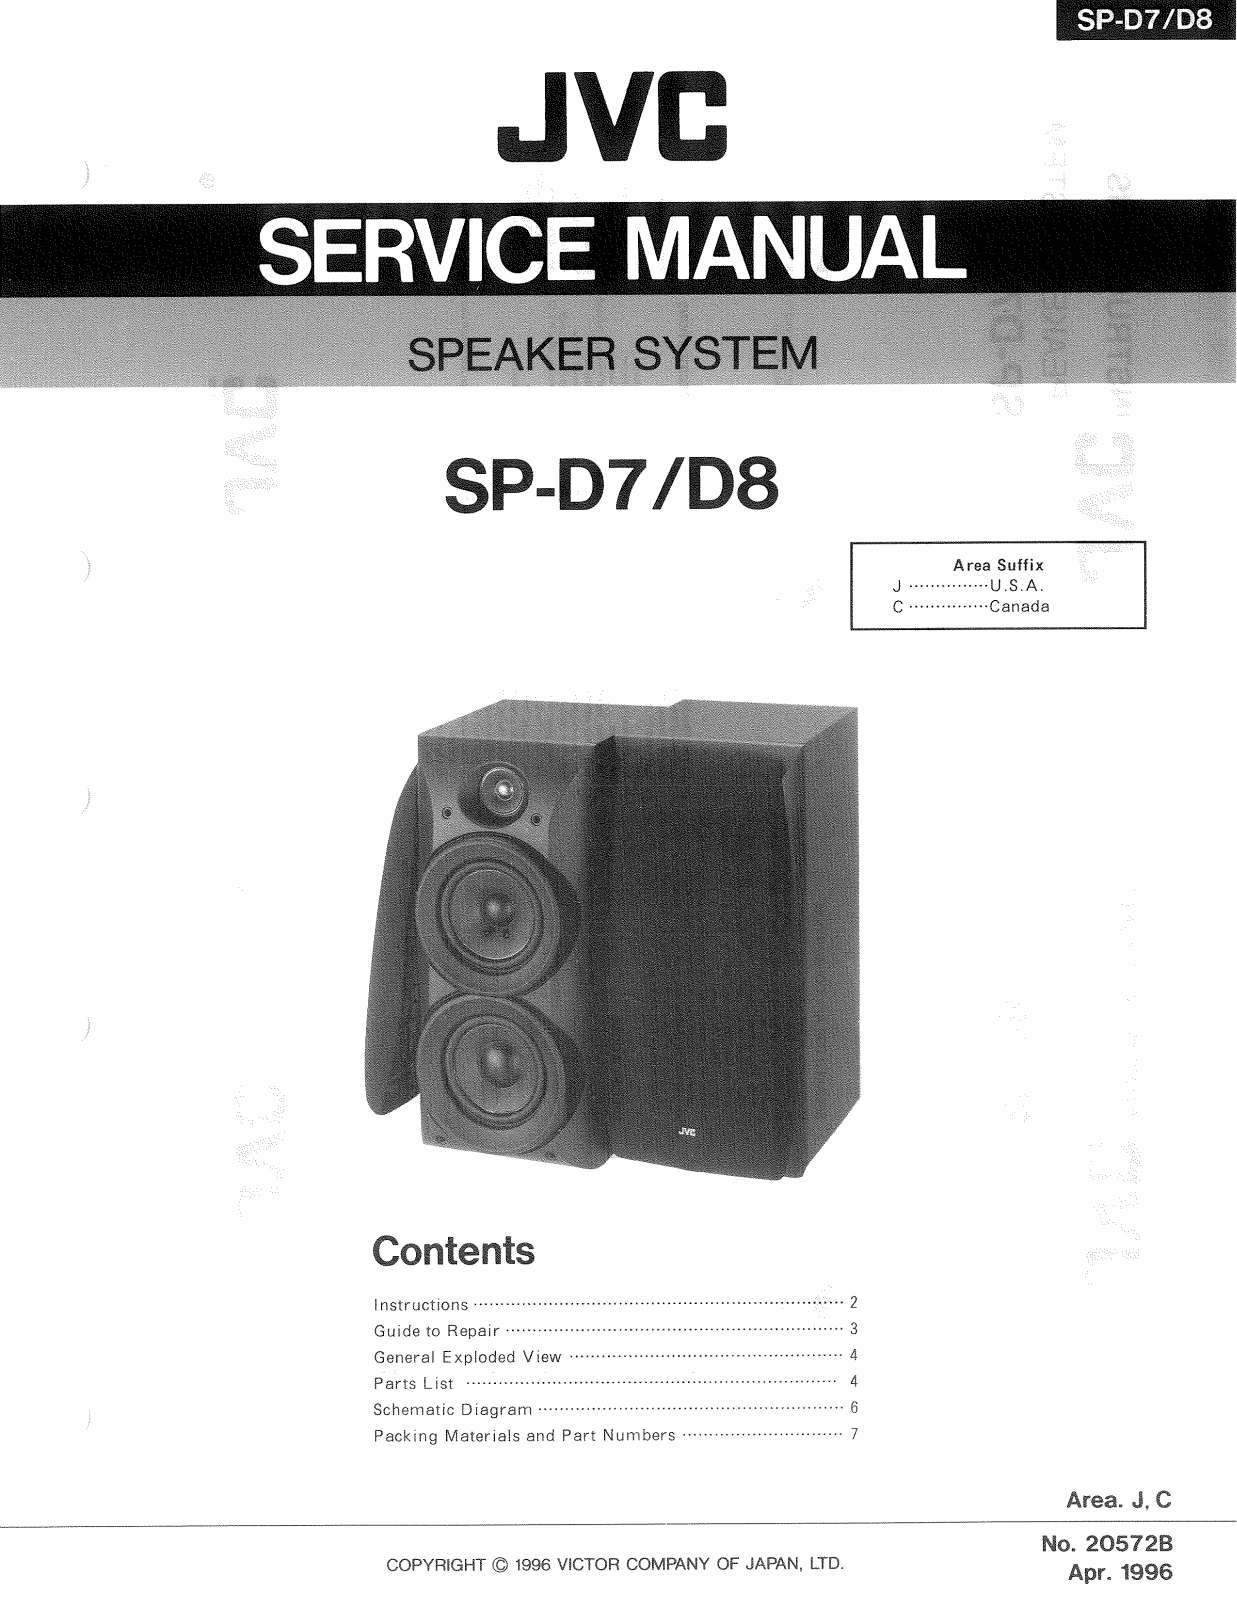 JVC SP-D7, SP-D8 Service Manual